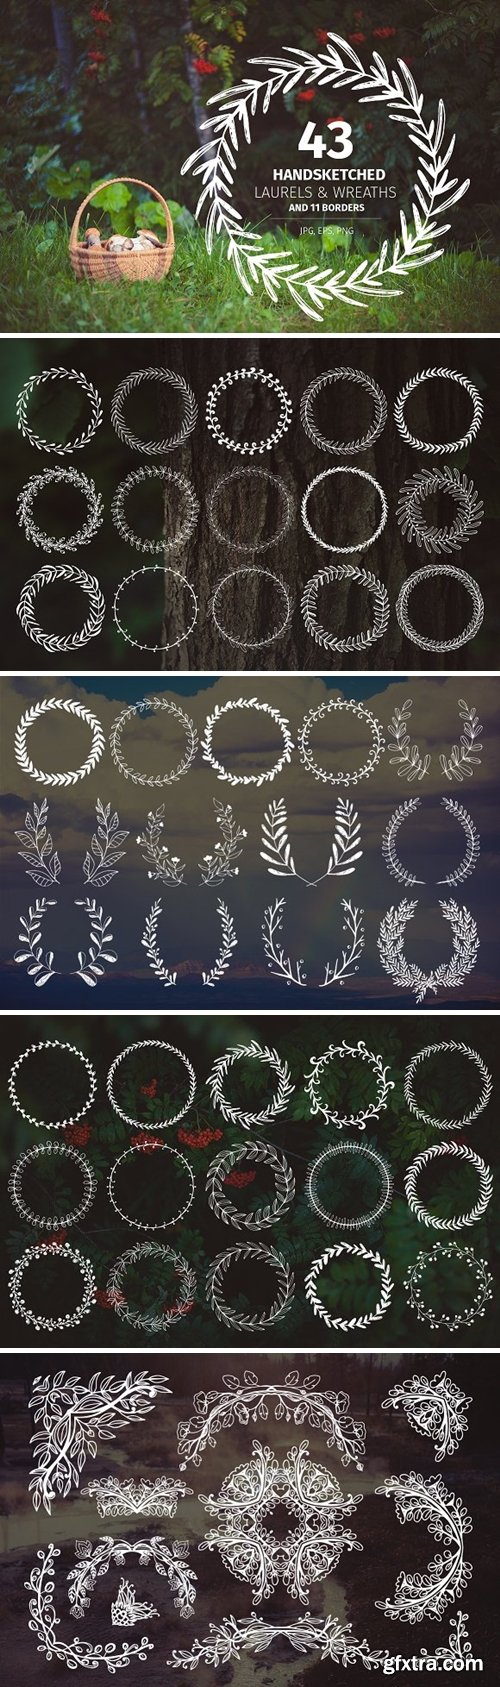 CM - 43 Handsketched Laurels & Wreaths 143192